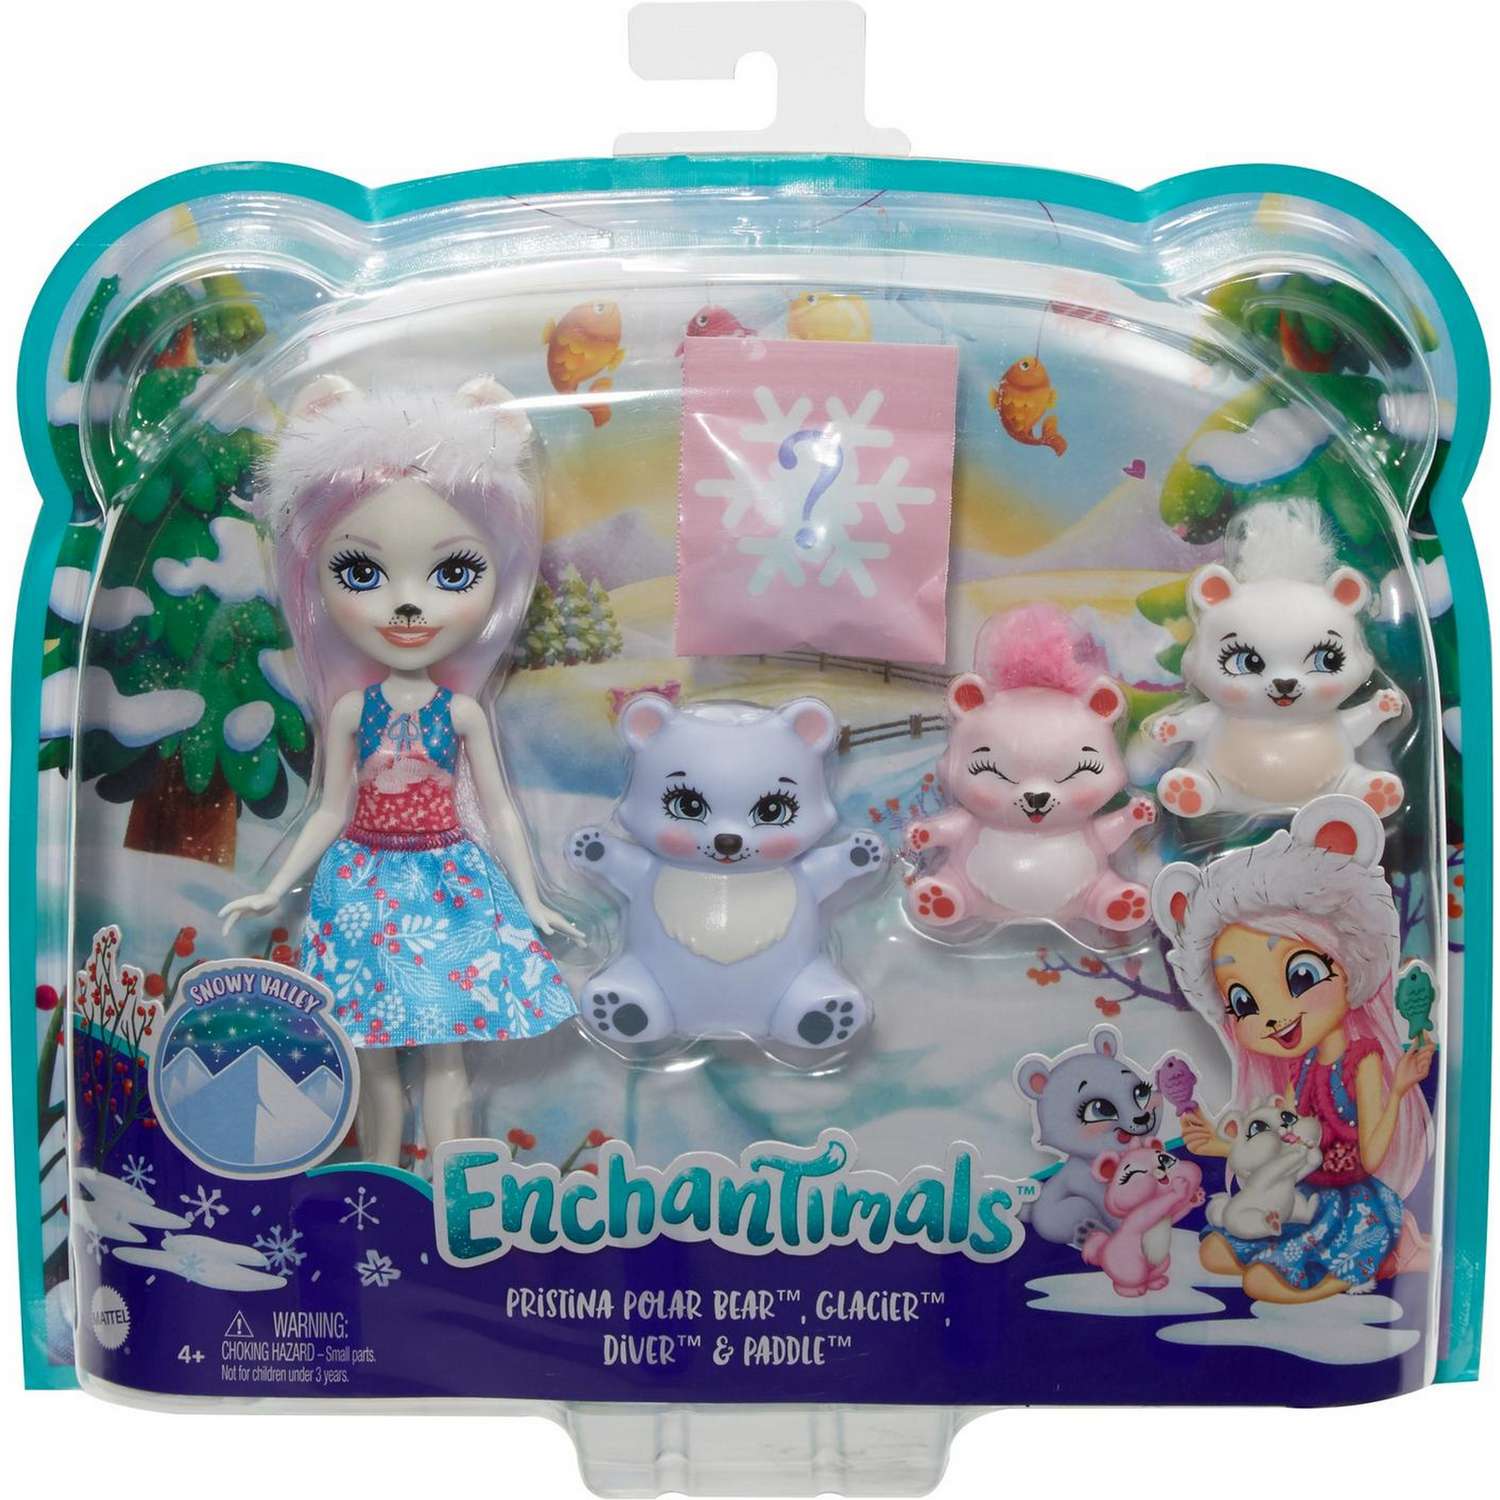 Кукла Enchantimals Пристина Полярная Миша с семьей GJX47 GJX43 - фото 2